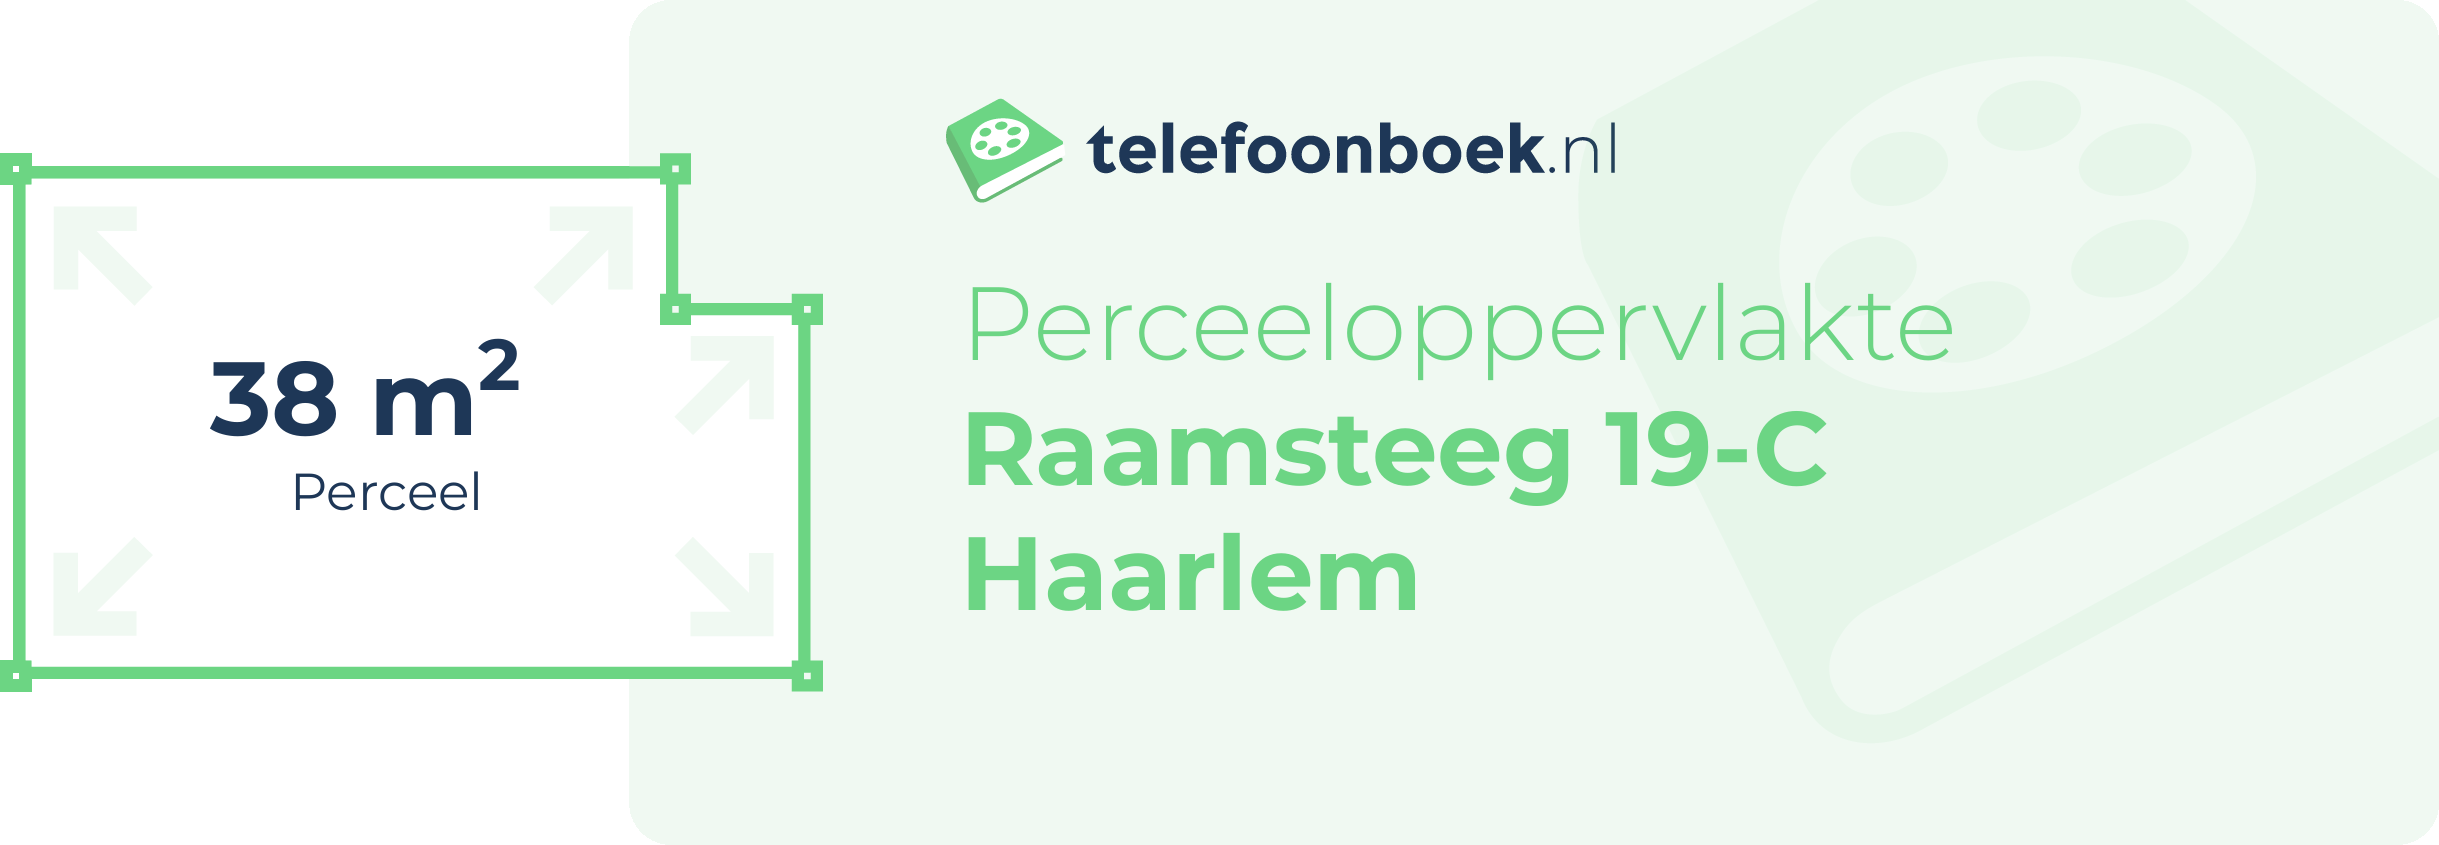 Perceeloppervlakte Raamsteeg 19-C Haarlem